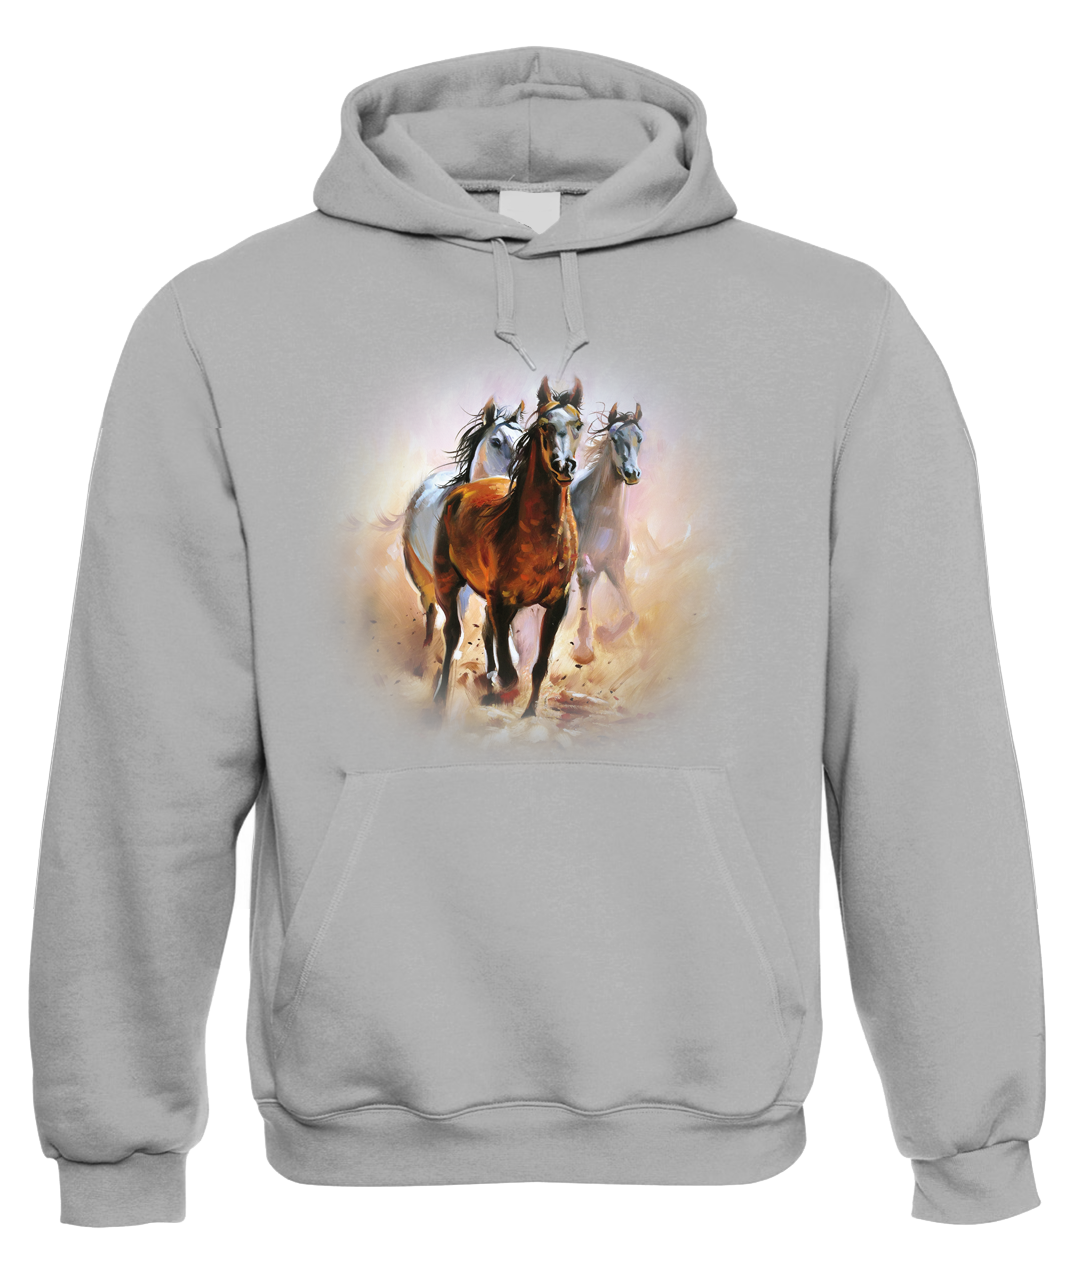 Mikina s koněm - Malované koně Velikost: S, Barva: Šedá